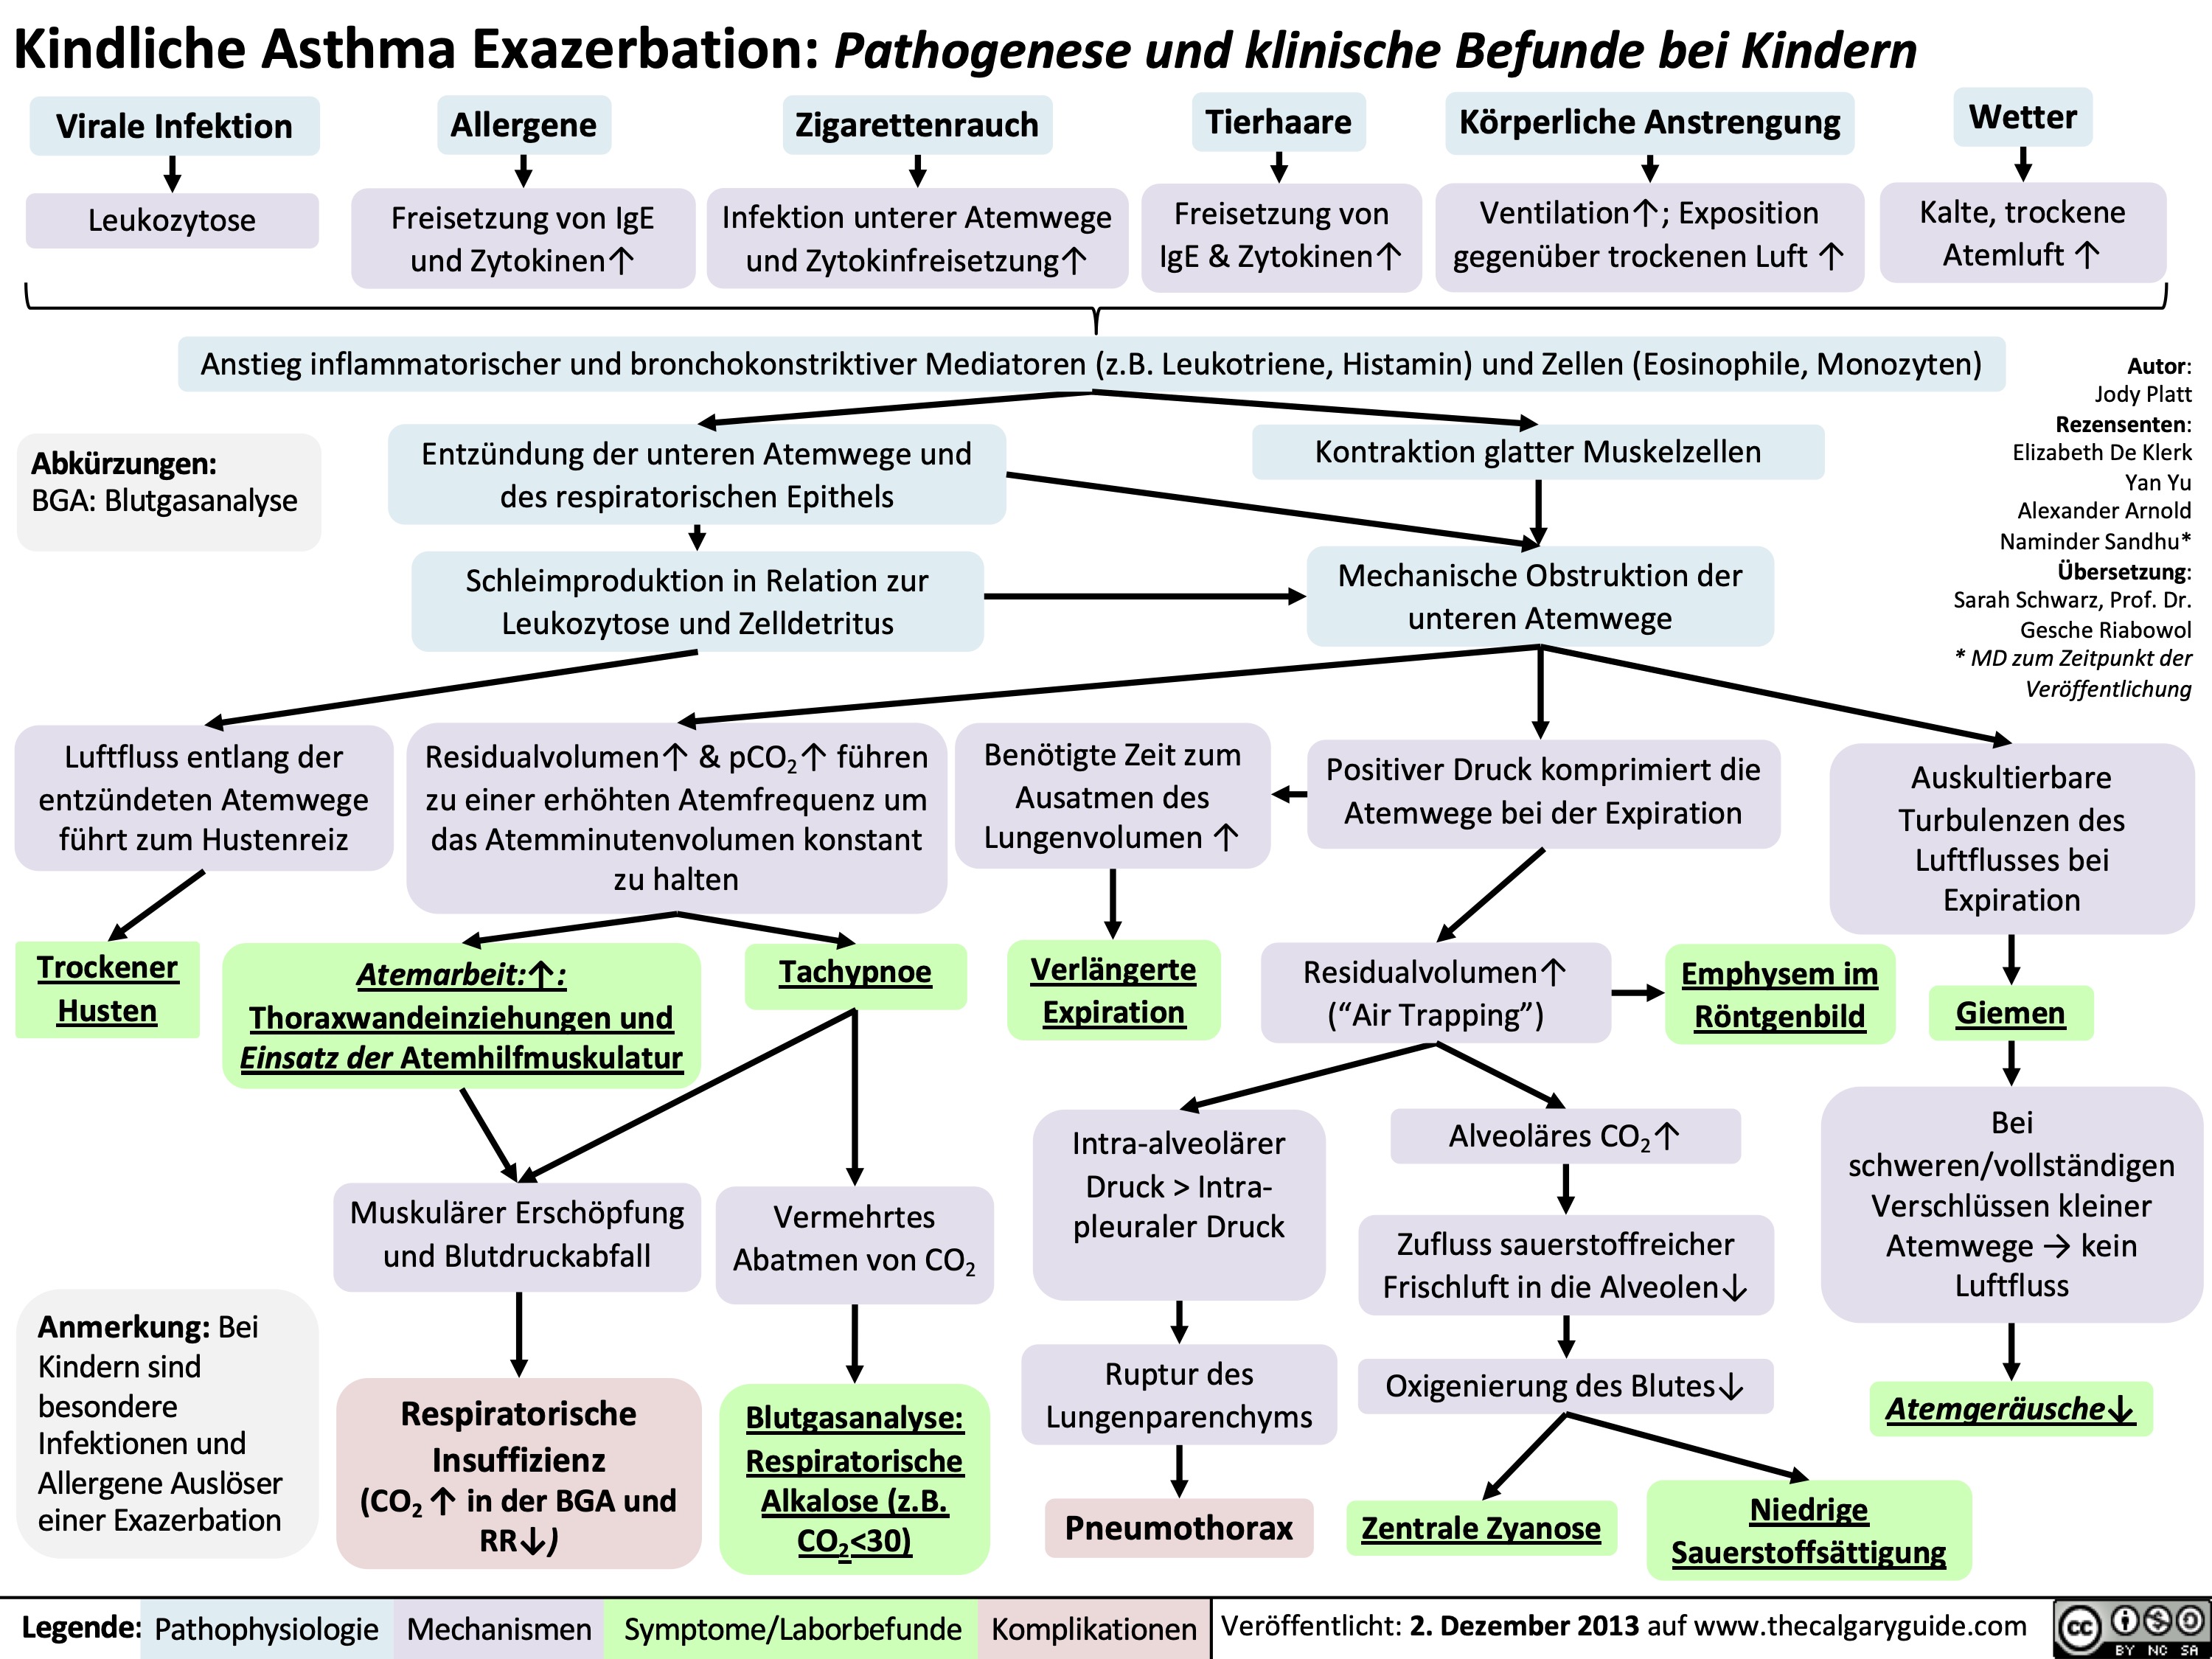 Kindliche Asthma Exazerbation: Pathogenese und klinische Befunde bei Kindern